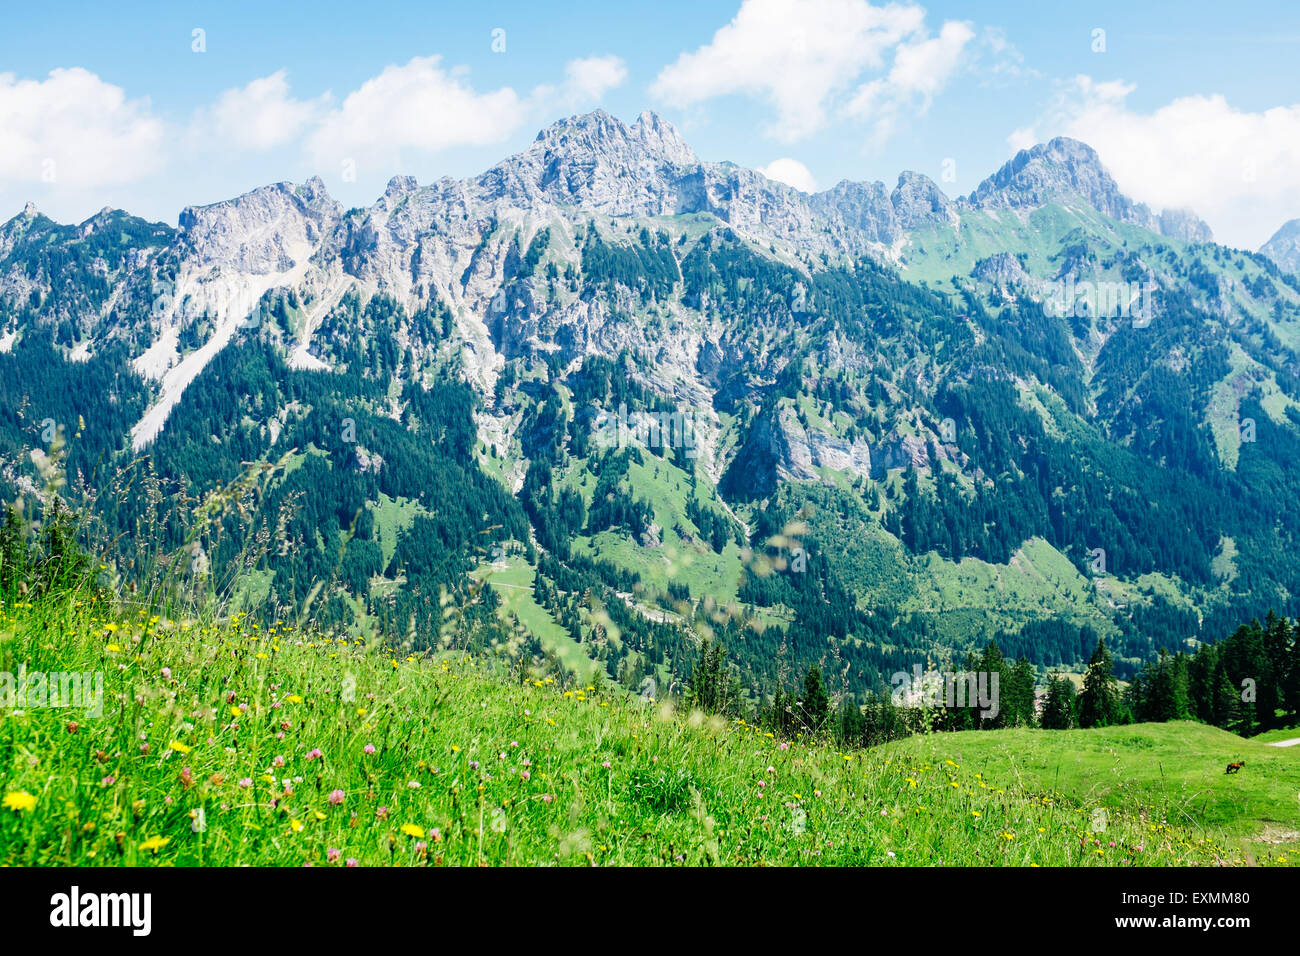 Mountain range in Tannheimer tal, Tirol, Austria Stock Photo